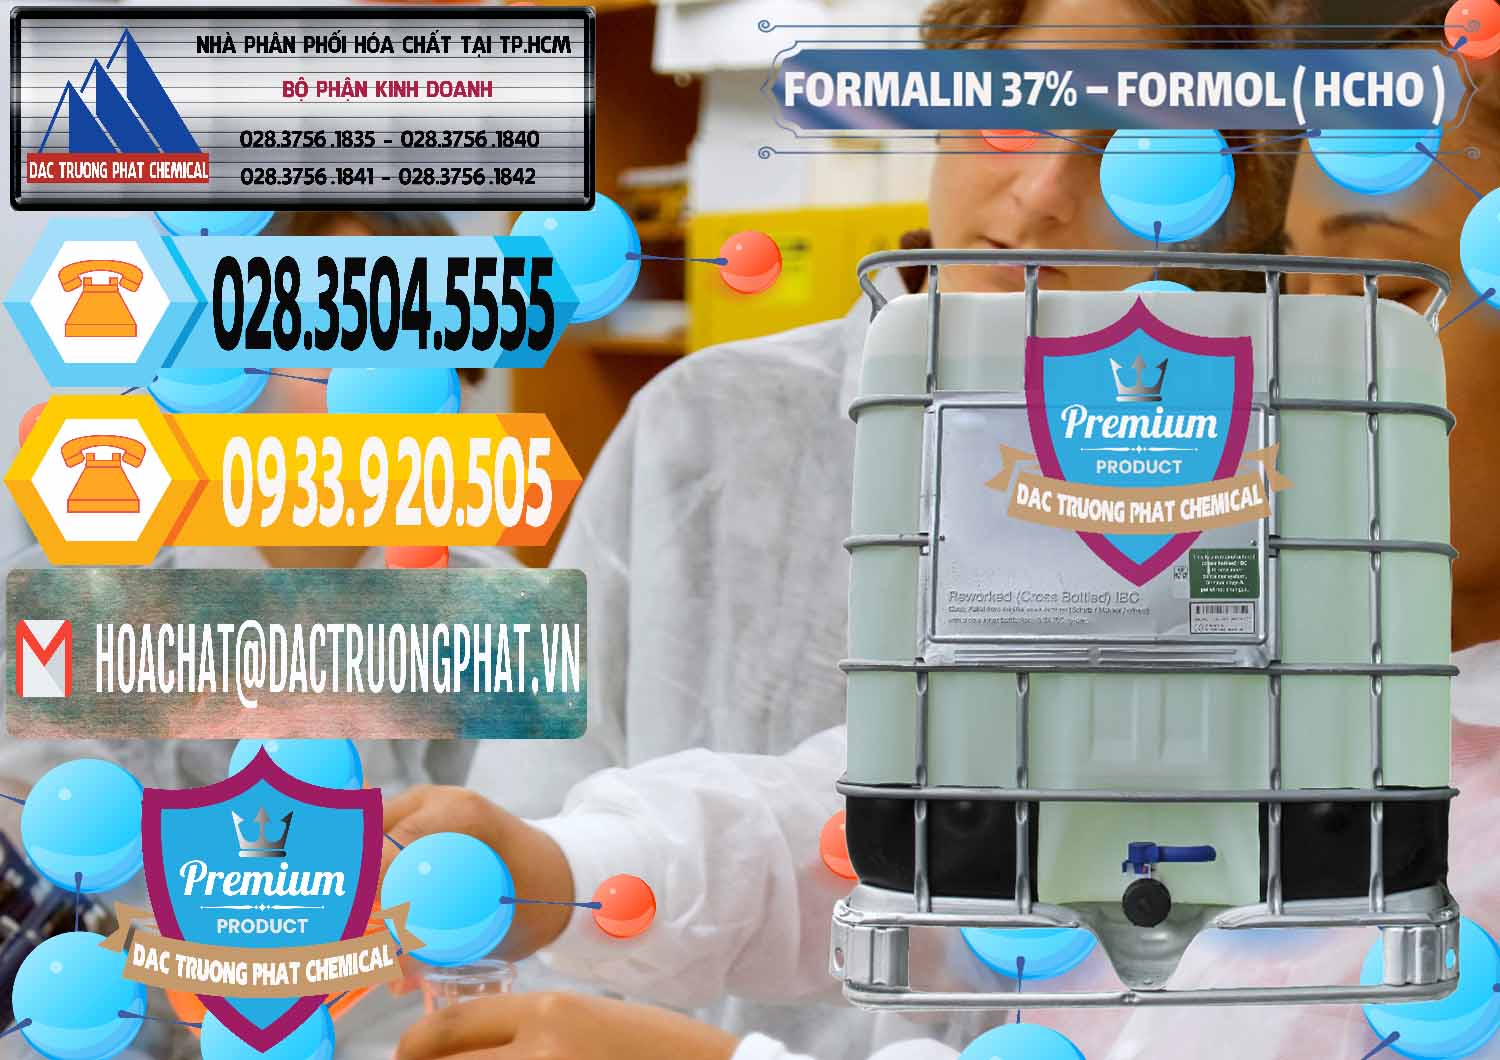 Công ty chuyên bán & cung ứng Formalin - Formol ( HCHO ) 37% Việt Nam - 0187 - Chuyên bán & phân phối hóa chất tại TP.HCM - hoachattayrua.net